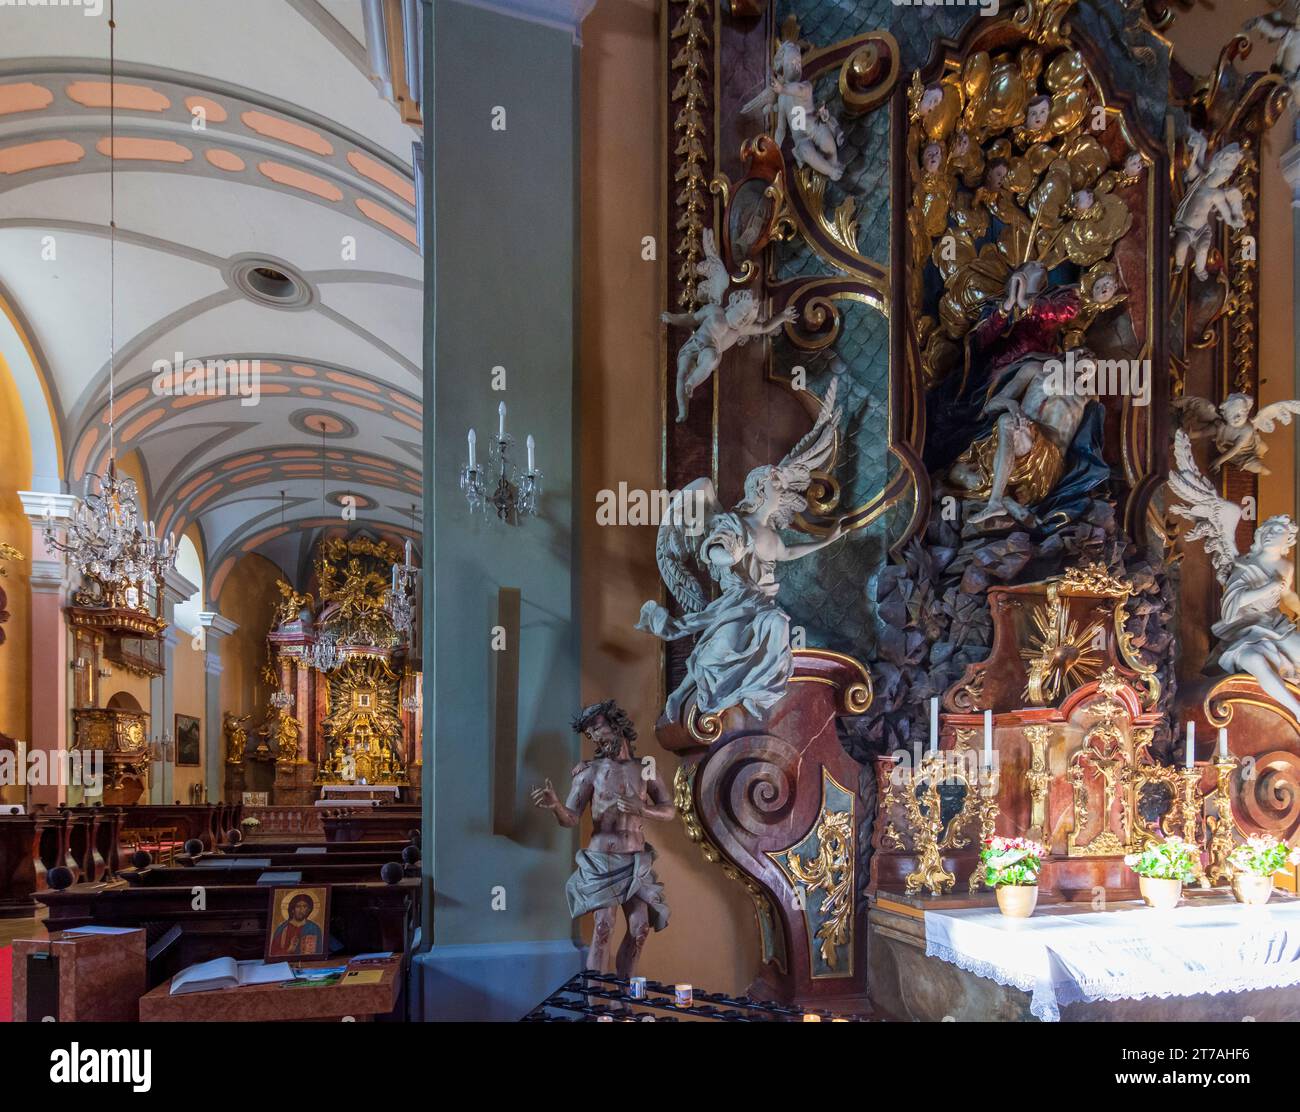 Gutenstein: pilgramage church Mariahilfberg, nave in Wiener Alpen, Alps, Niederösterreich, Lower Austria, Austria Stock Photo